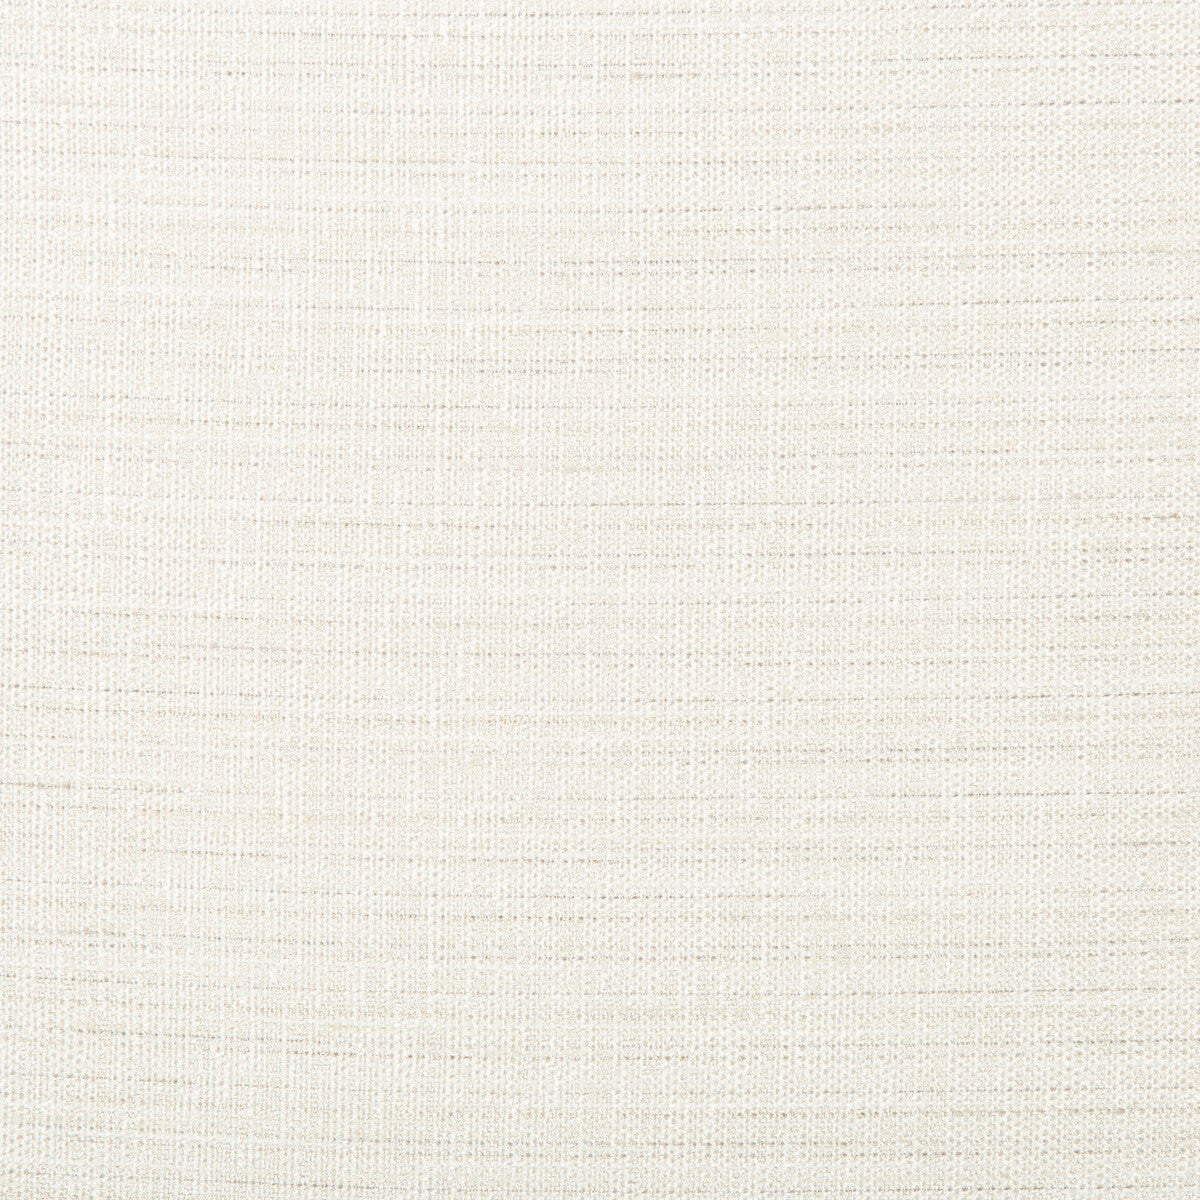 Kravet Basics fabric in 4673-101 color - pattern 4673.101.0 - by Kravet Basics